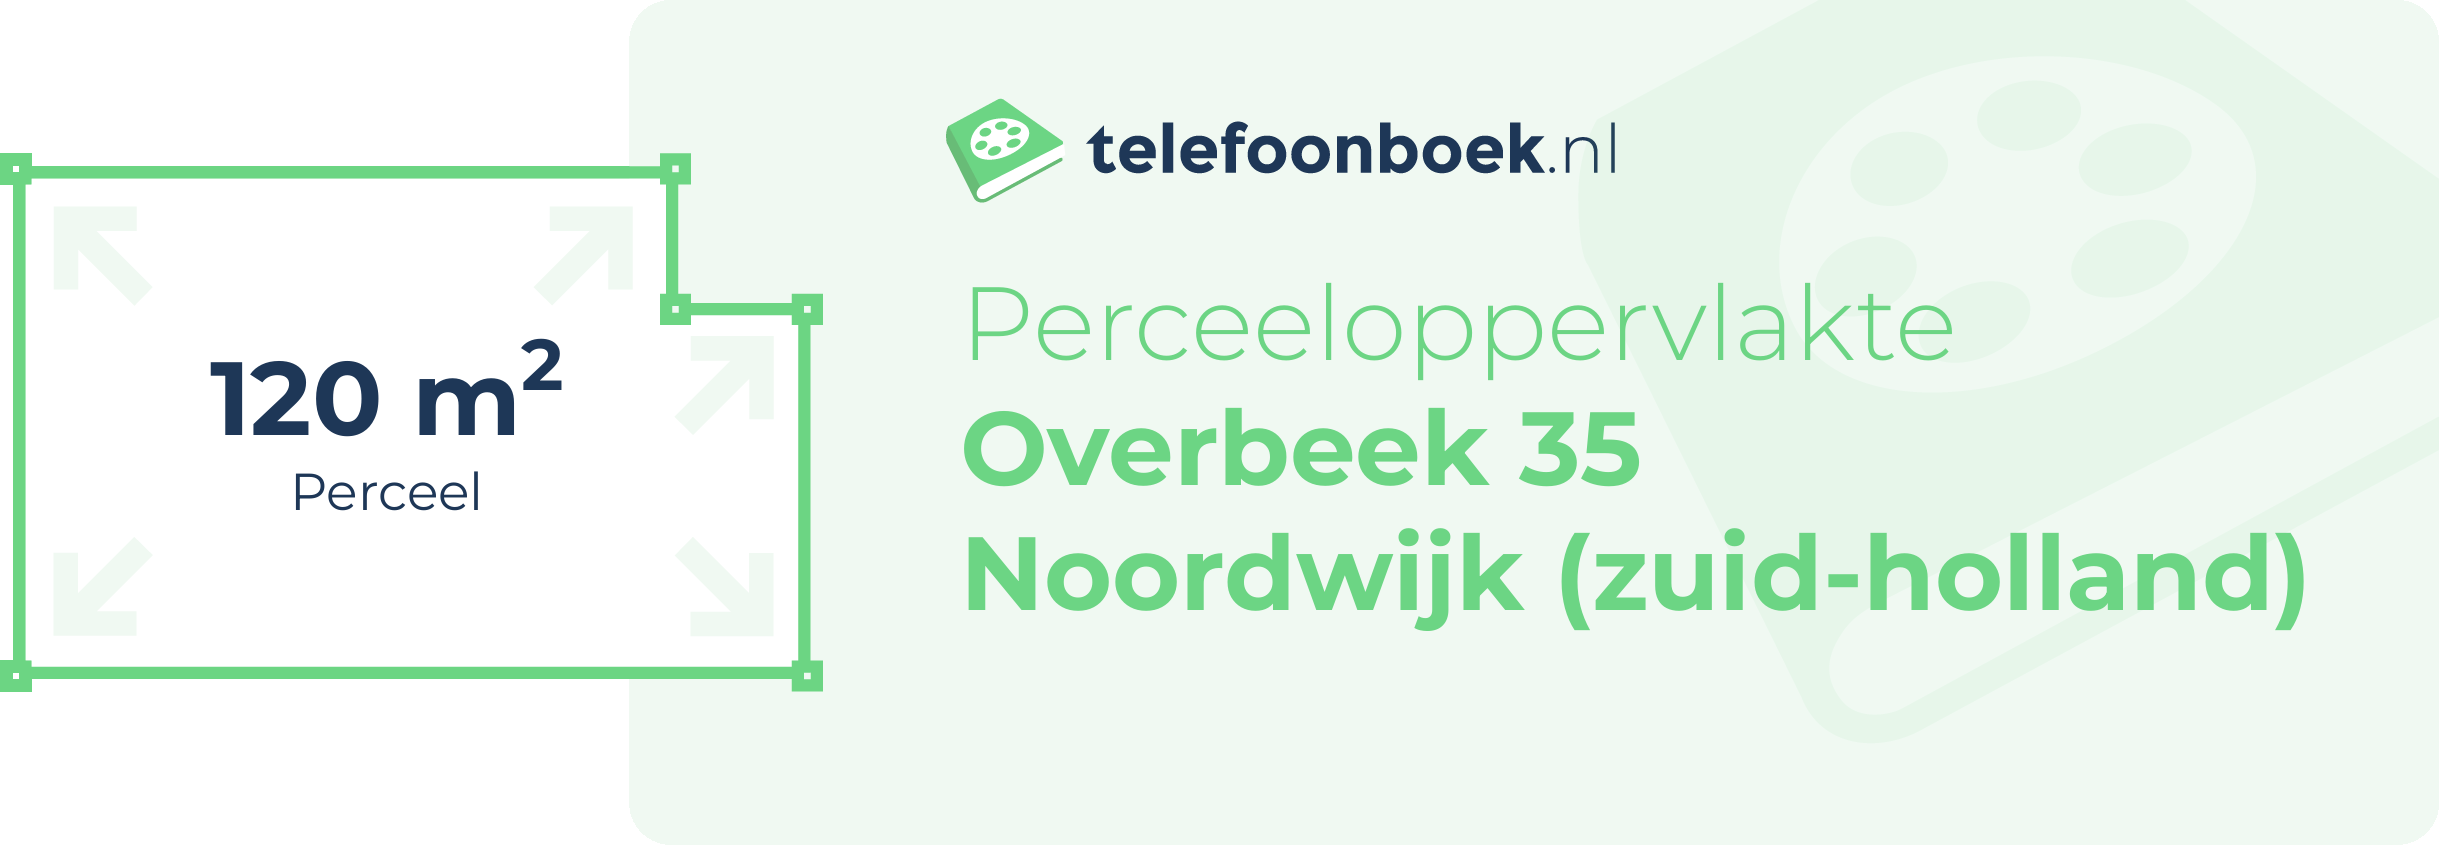 Perceeloppervlakte Overbeek 35 Noordwijk (Zuid-Holland)